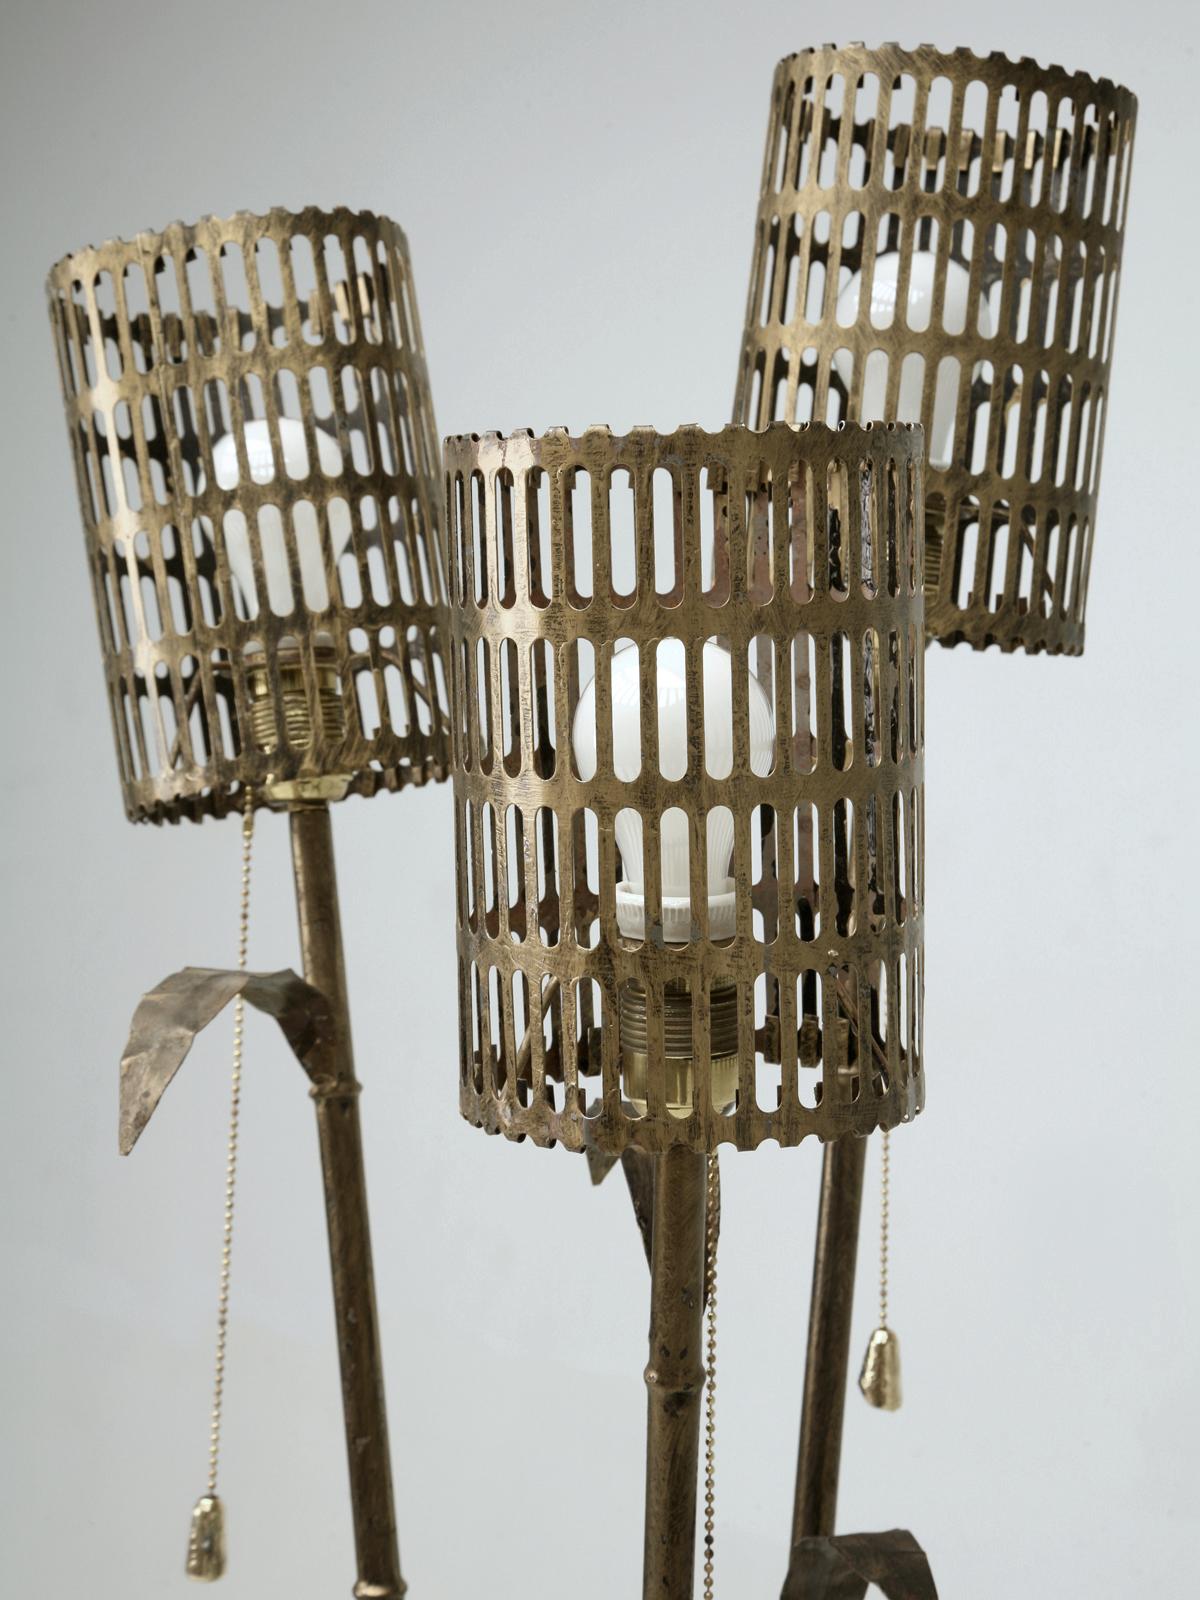 Vintage Midcentury Italian, métal doré en forme de bambou, lampadaire à 3 lumières avec abat-jour en métal d'origine assorti. La dorure du métal a été exécutée dans une belle couleur bronze foncé vieilli. Ce magnifique lampadaire italien doré peut